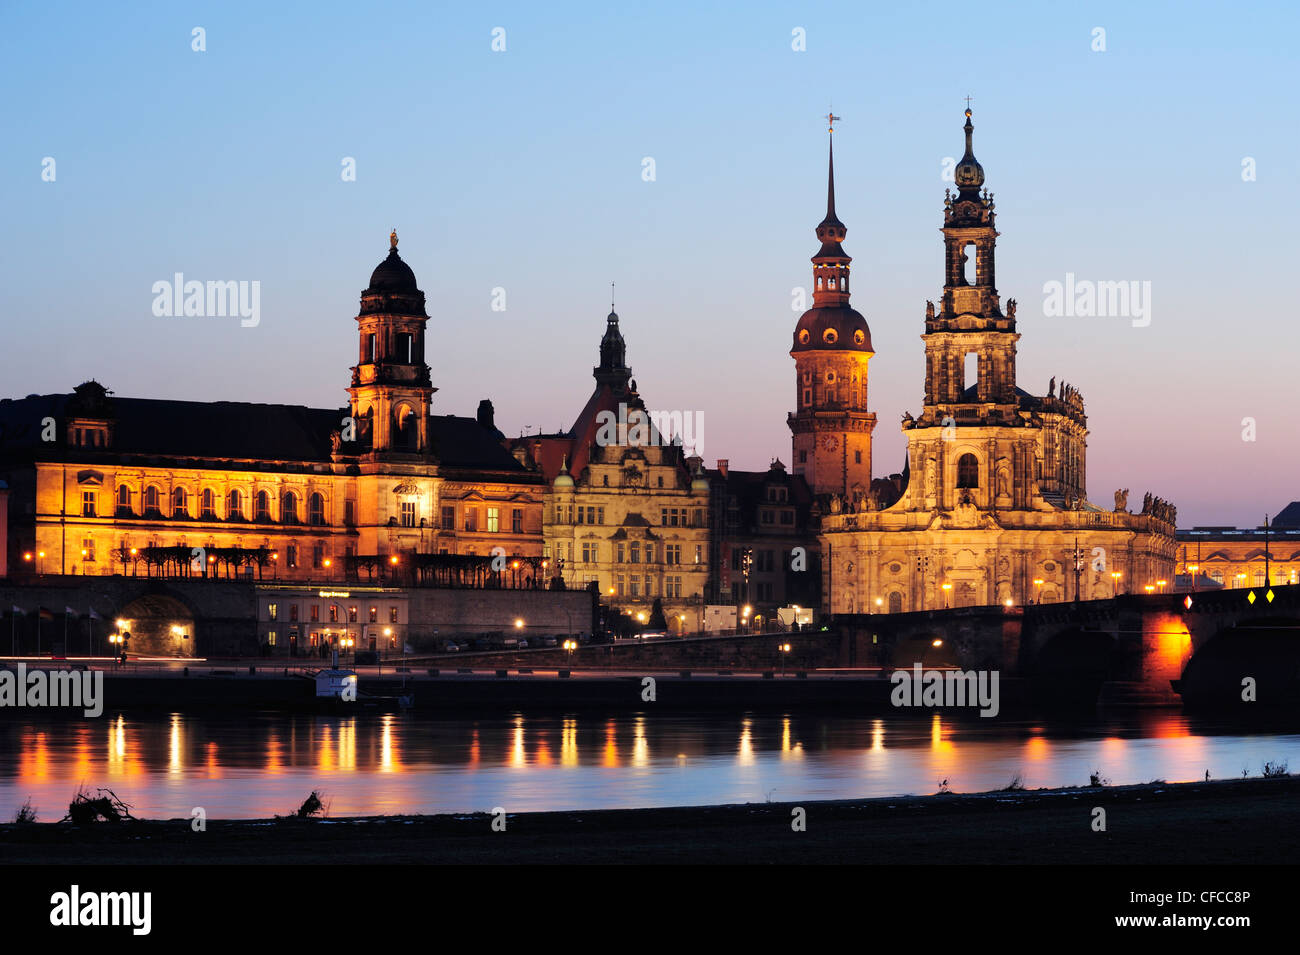 Beleuchtete Stadt Dresden mit Ständehaus, Georgentor Tor, Dresdner Schloss und Kathedrale, Fluss Elbe im Vordergrund, Dresd Stockfoto